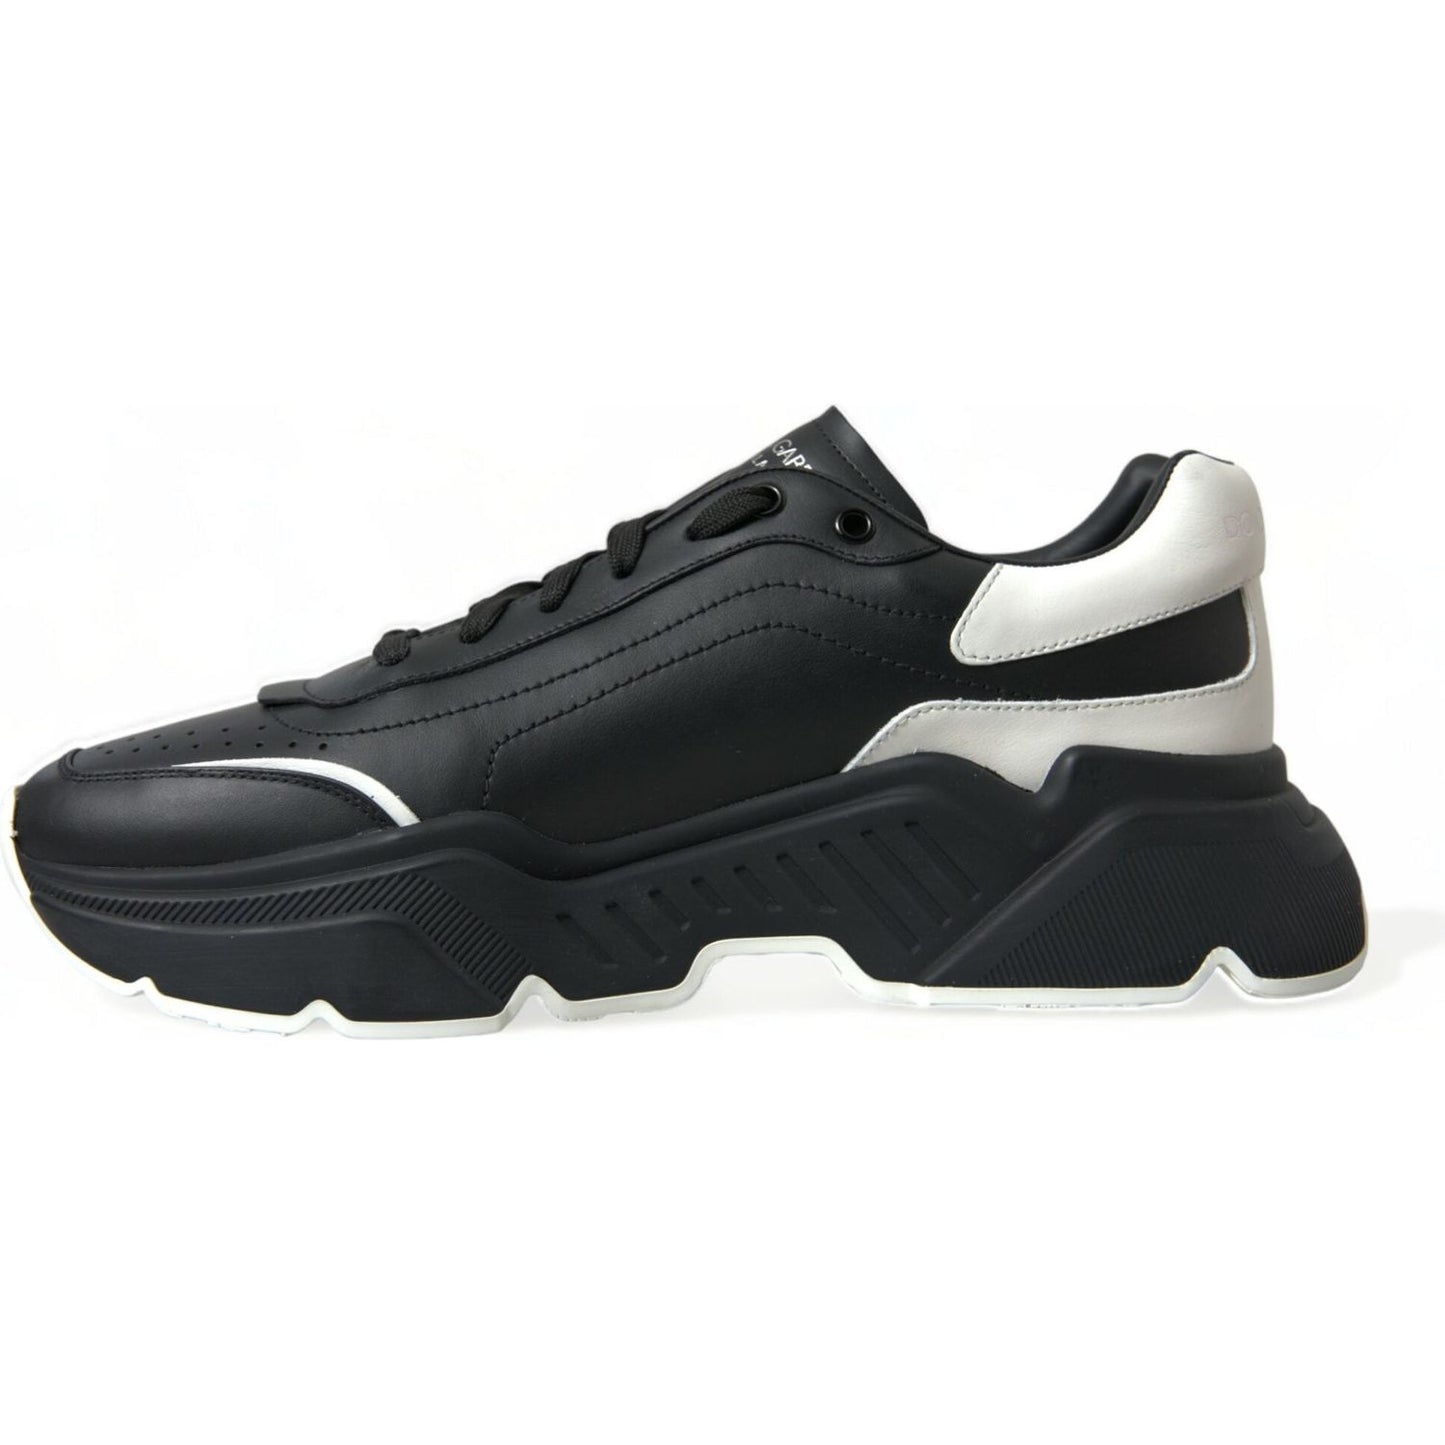 Dolce & Gabbana Elevated Daymaster Black Platform Sneakers elevated-daymaster-black-platform-sneakers